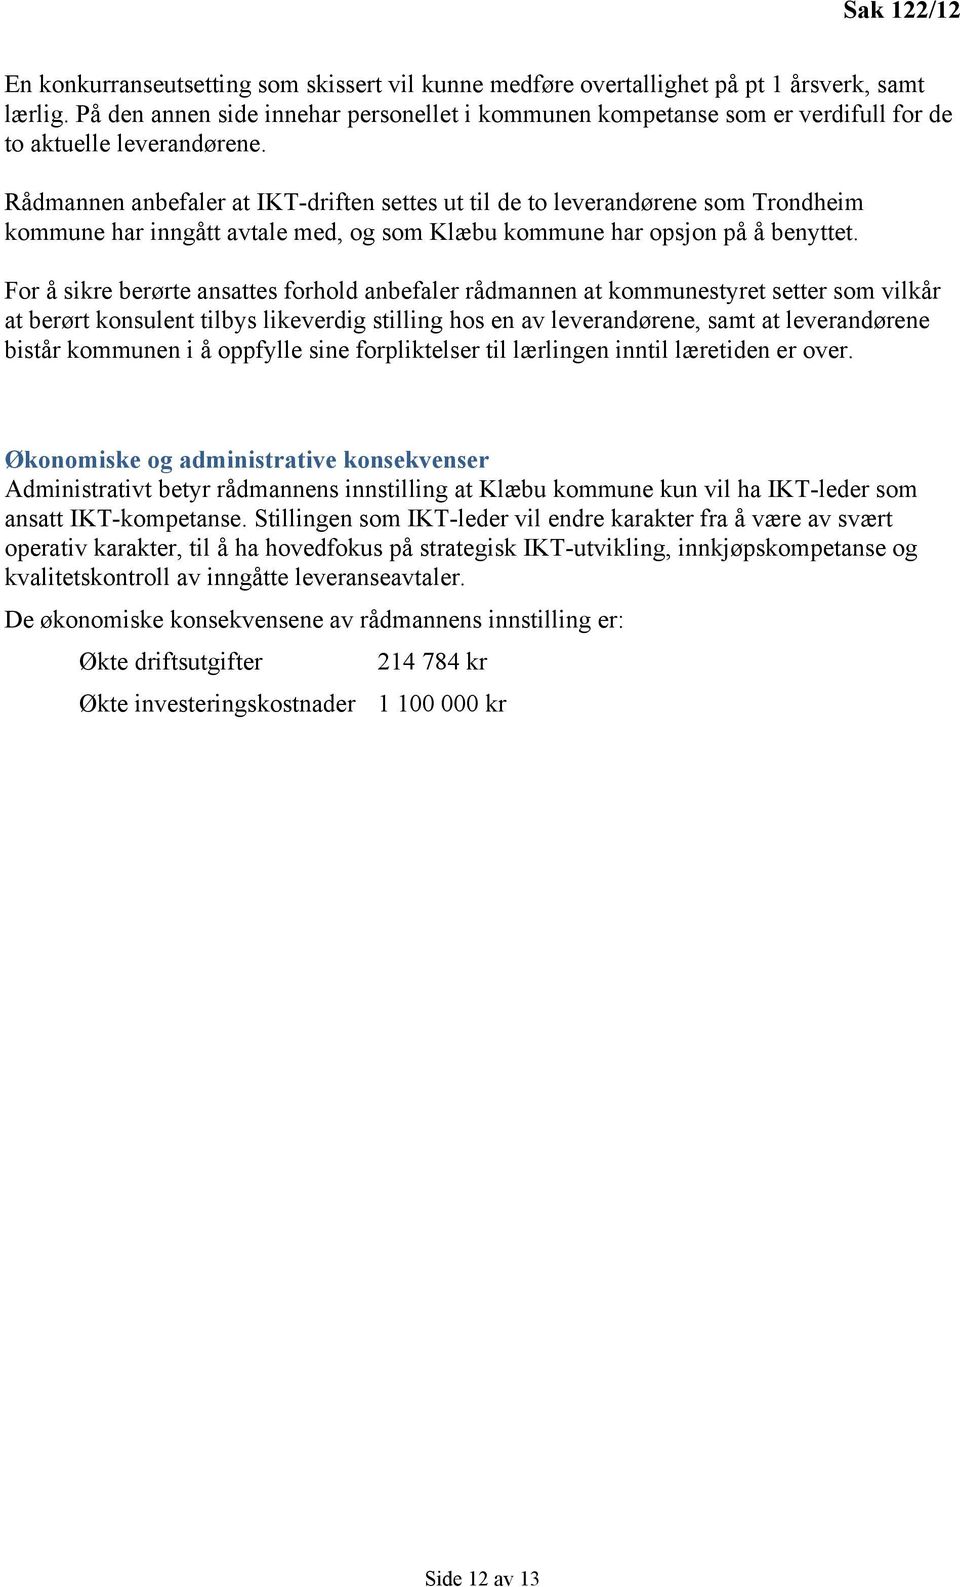 Rådmannen anbefaler at IKT-driften settes ut til de to leverandørene som Trondheim kommune har inngått avtale med, og som Klæbu kommune har opsjon på å benyttet.